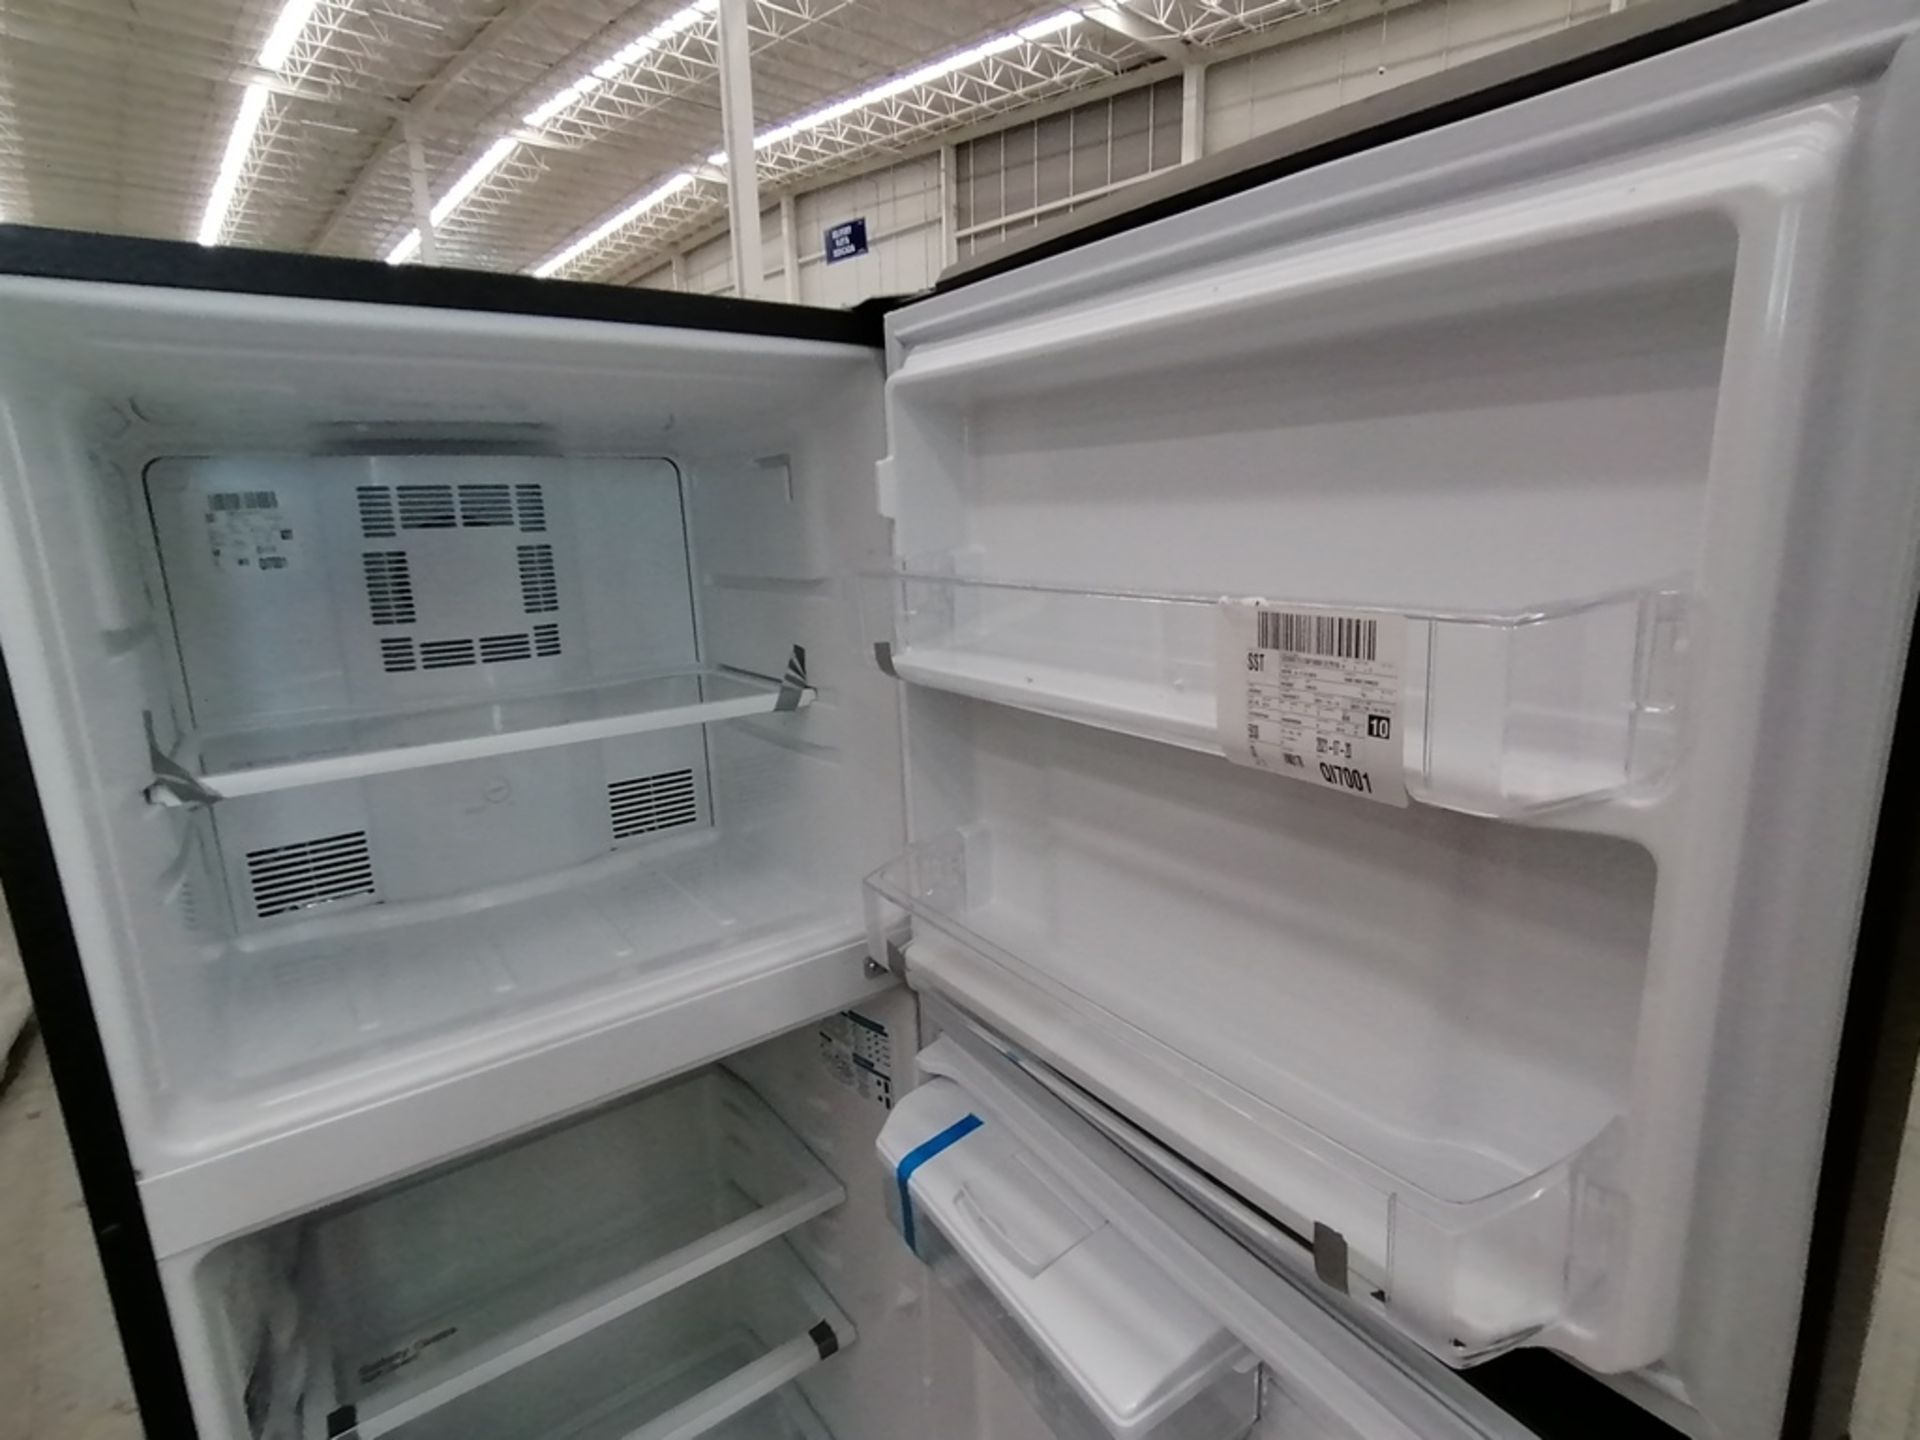 Lote de 2 Refrigeradores incluye: 1 Refrigerador, Marca Winia, Modelo DFR32210GNV, Serie MR217N104 - Image 13 of 15